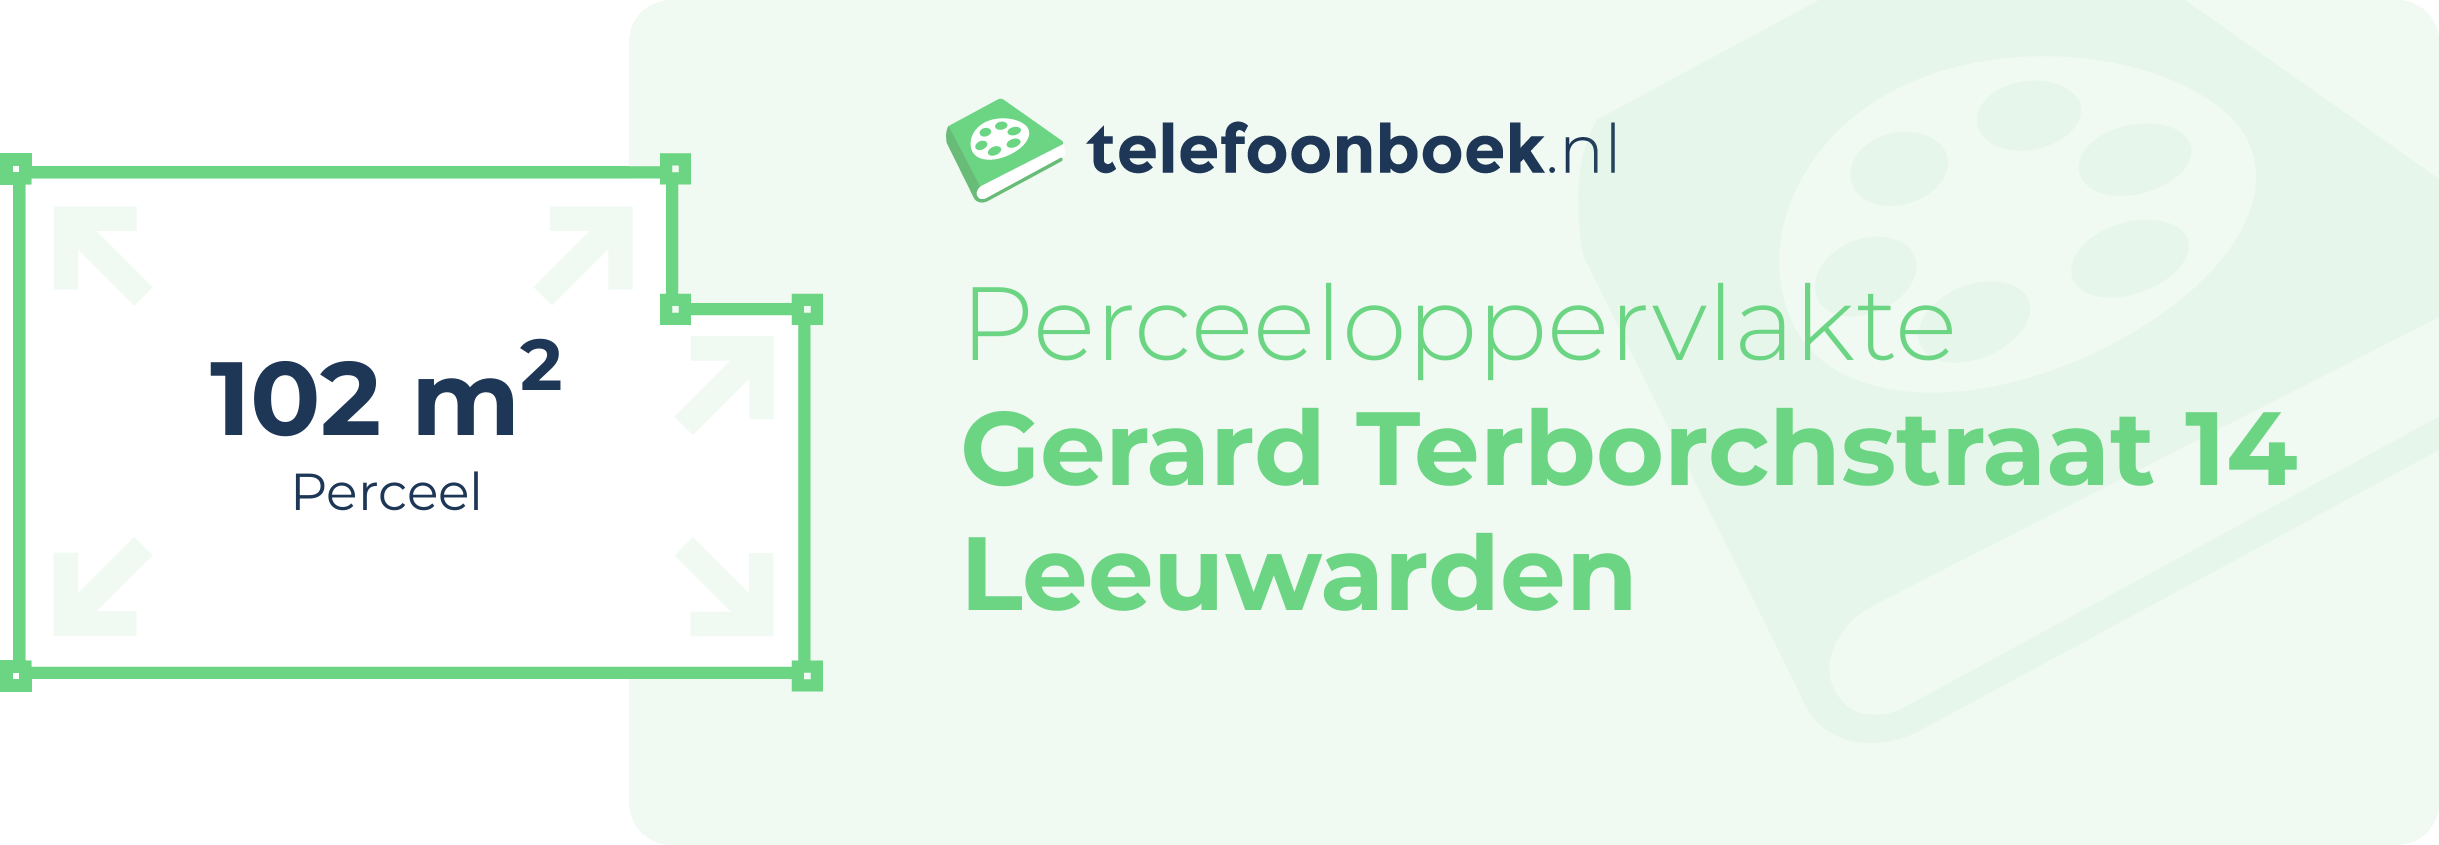 Perceeloppervlakte Gerard Terborchstraat 14 Leeuwarden